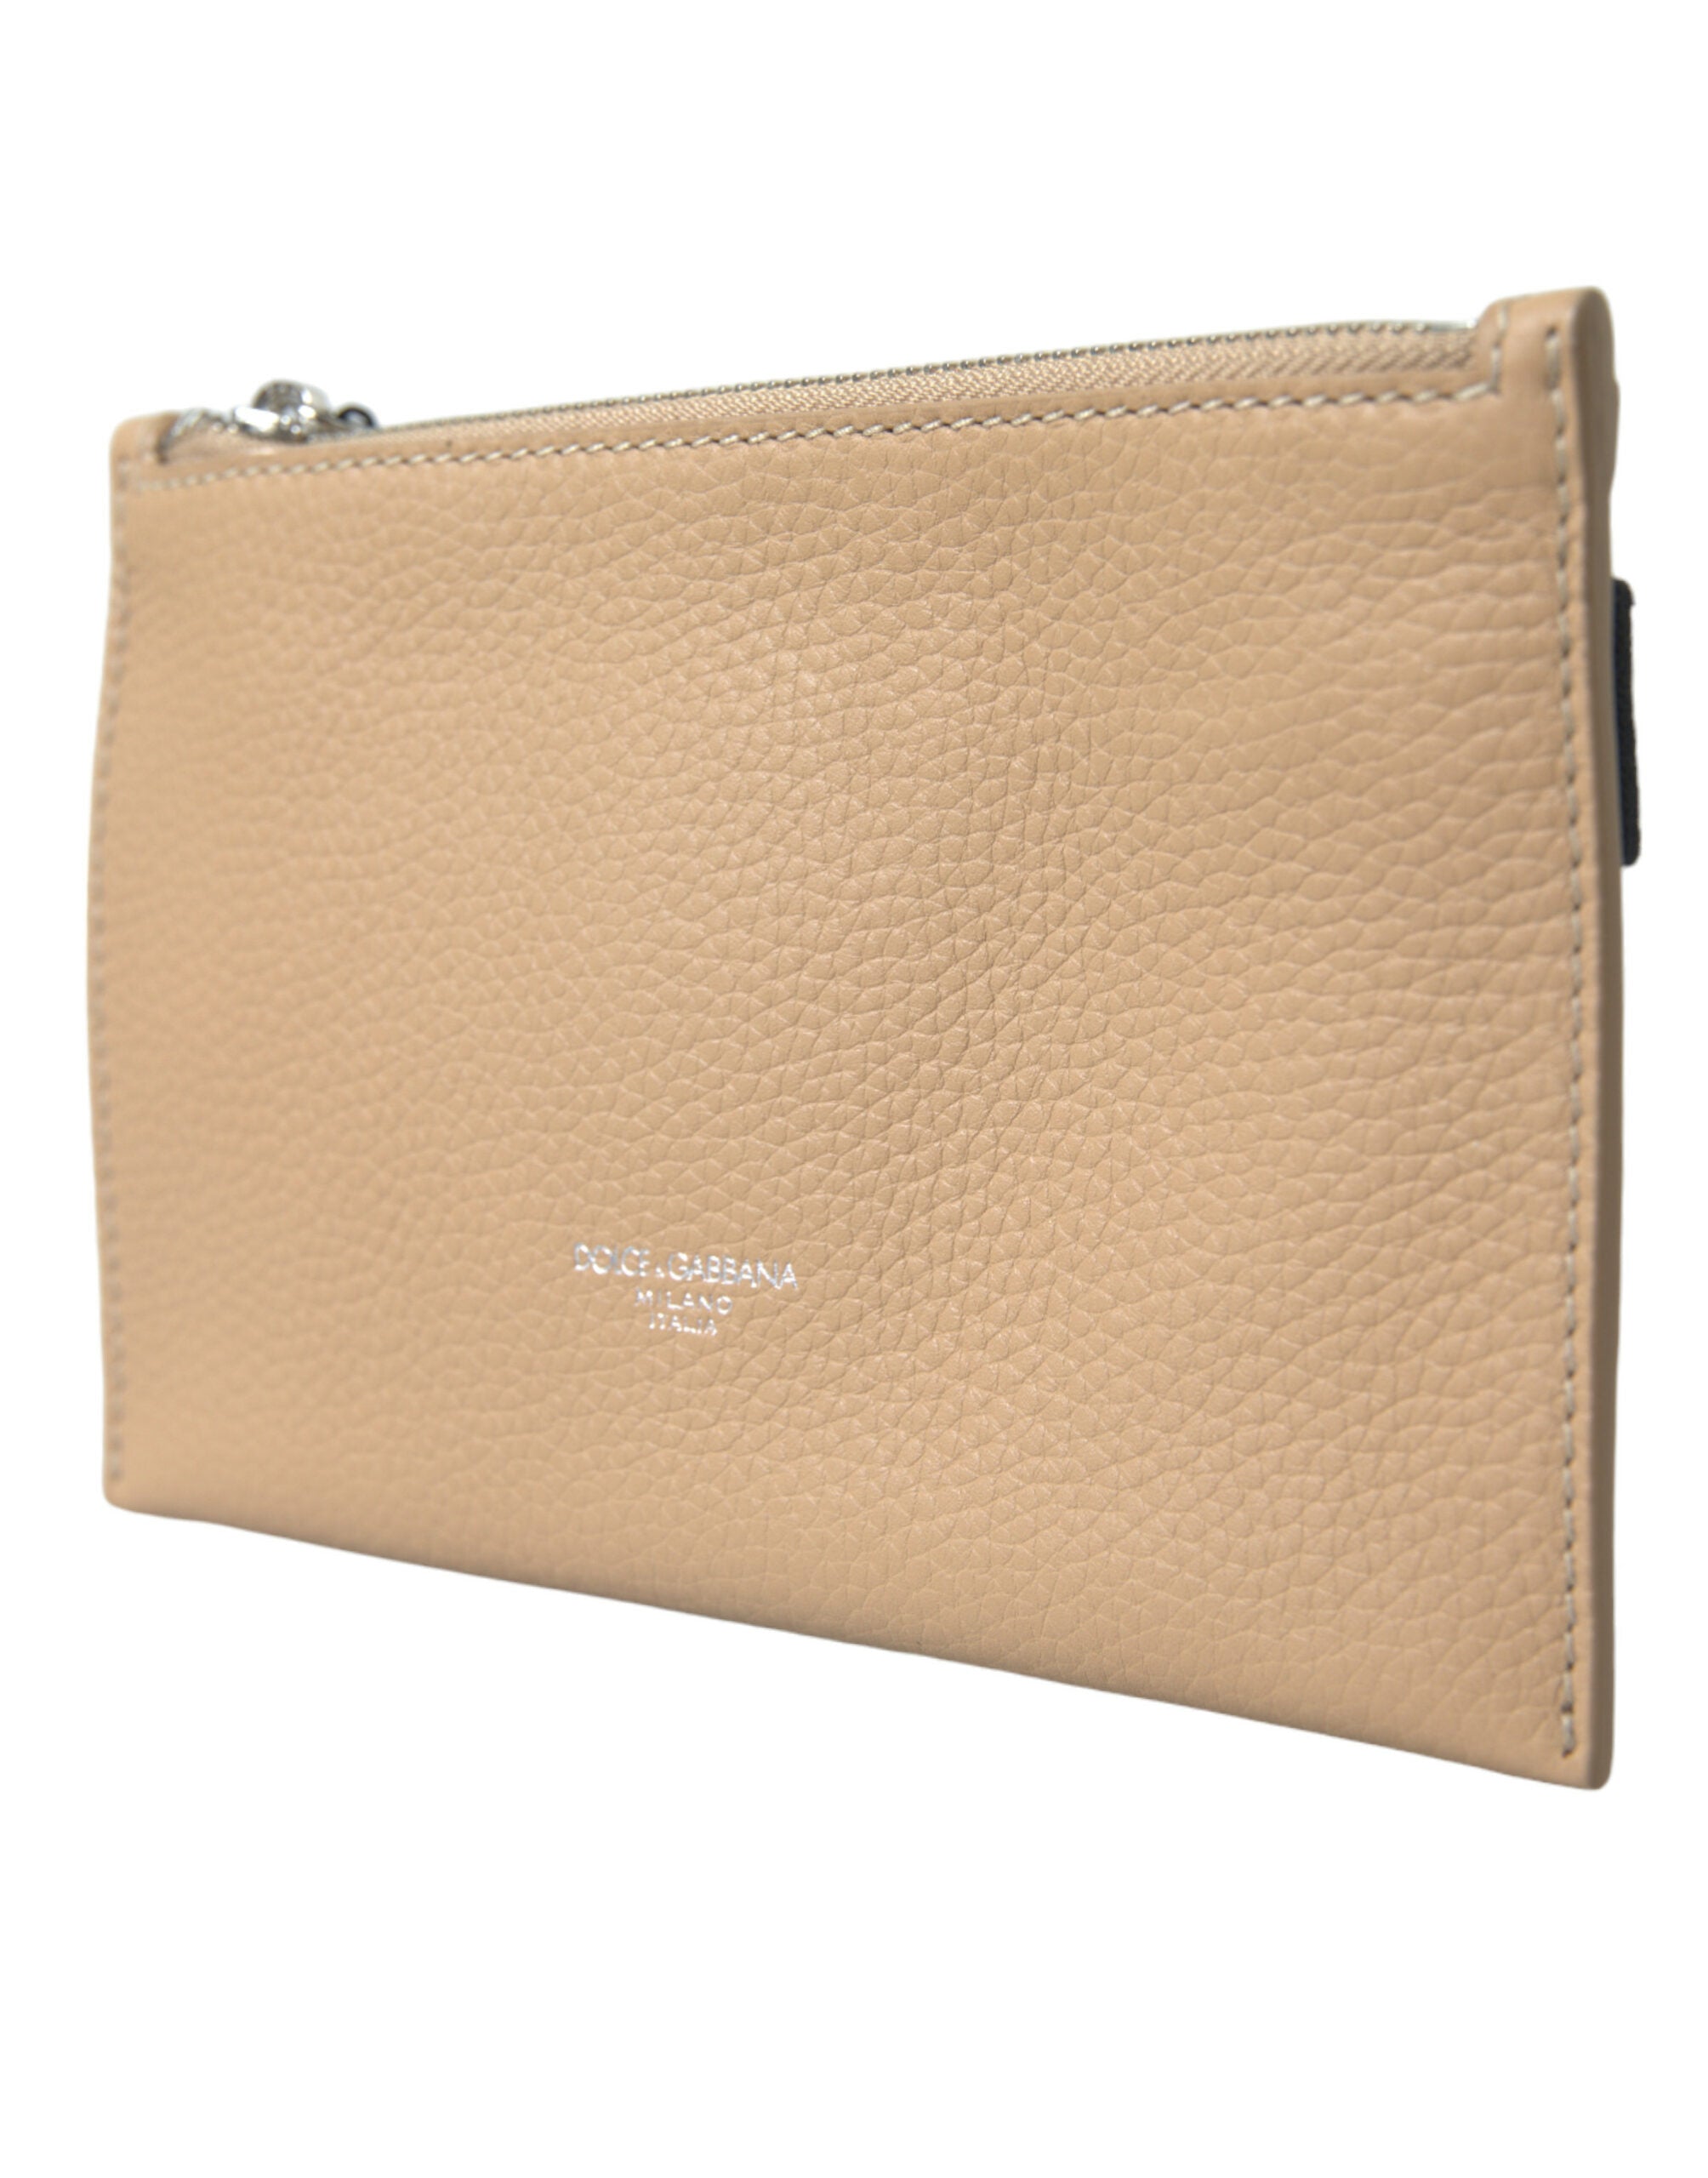 Elegance Redefined Beige Leather Belt Bag - Divitiae Glamour